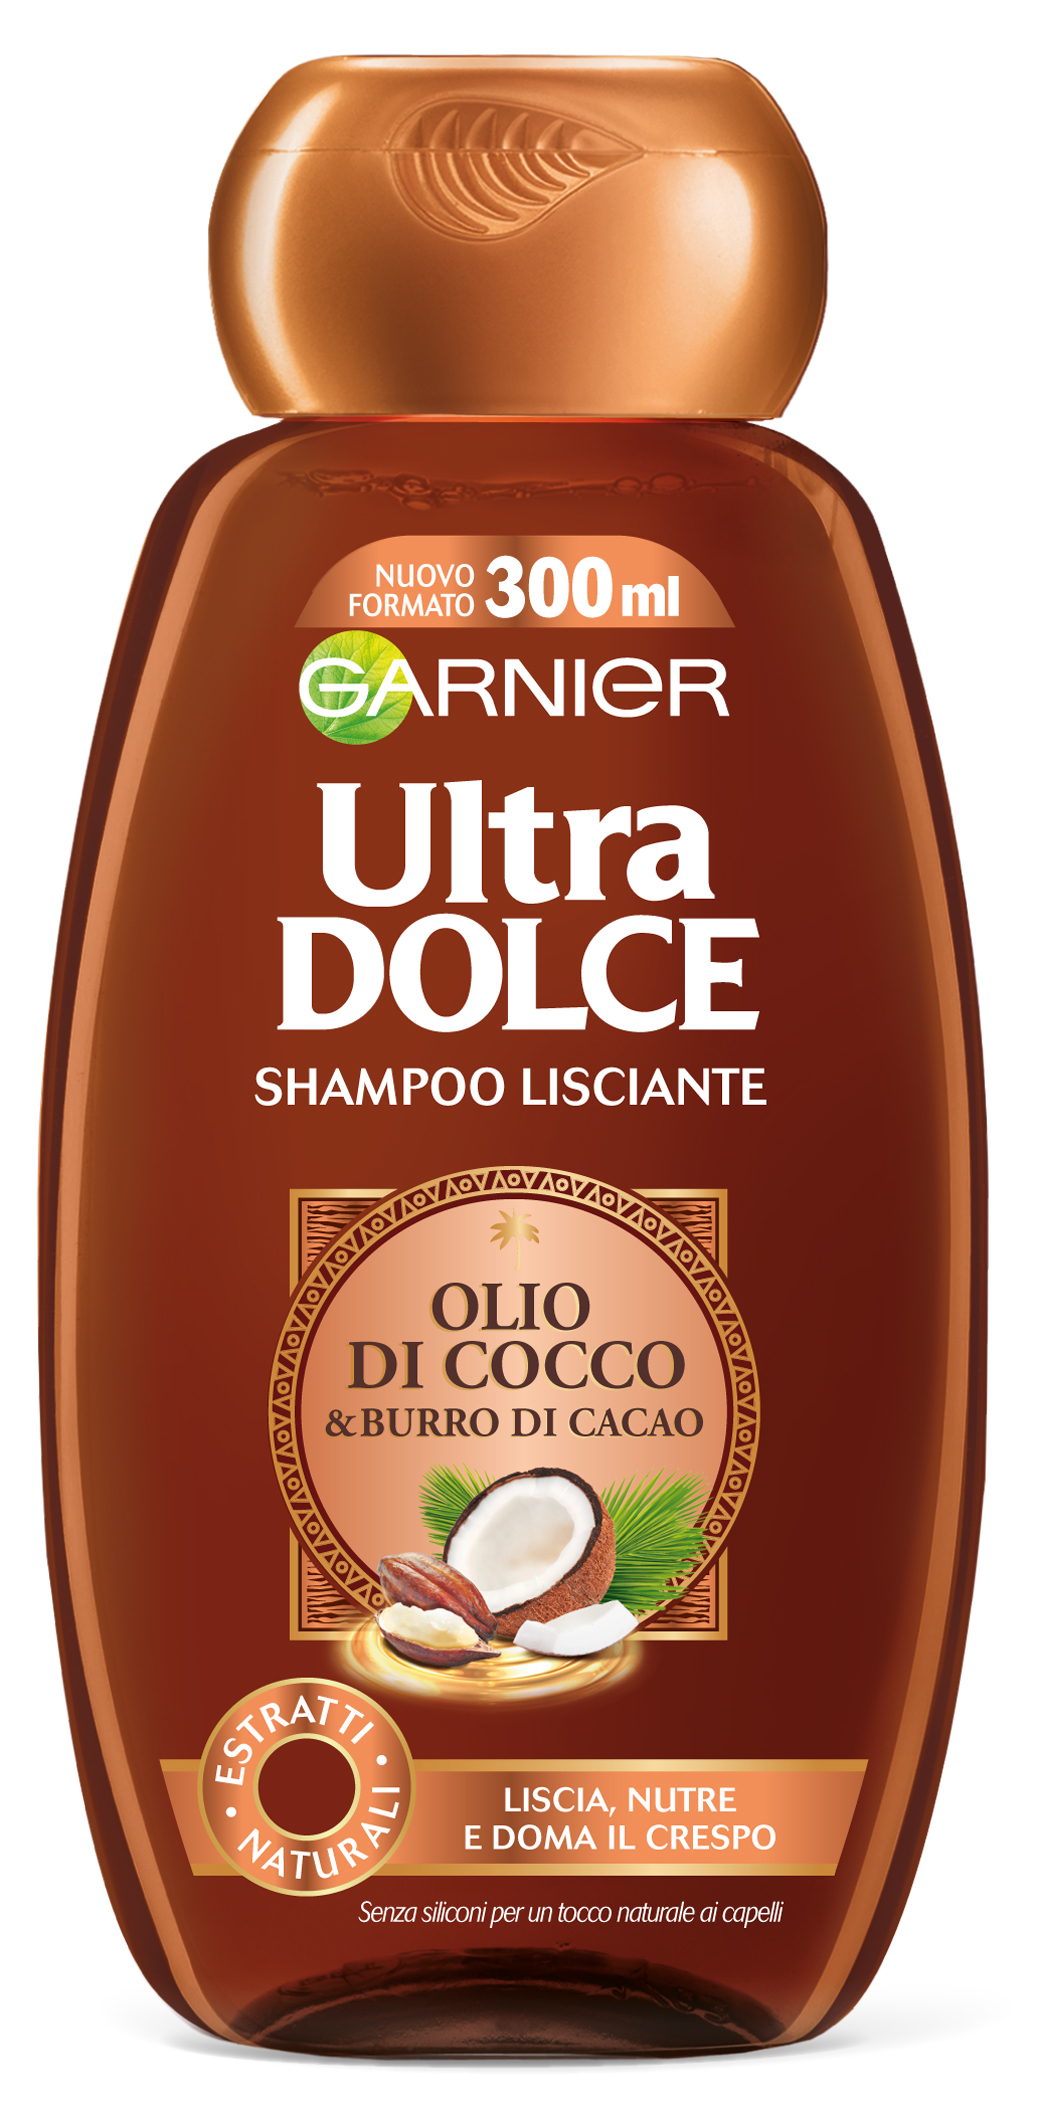 Garnier Ultra Dolce Shampoo Olio di Cocco & Burro di Cacao - Clicca l'immagine per chiudere